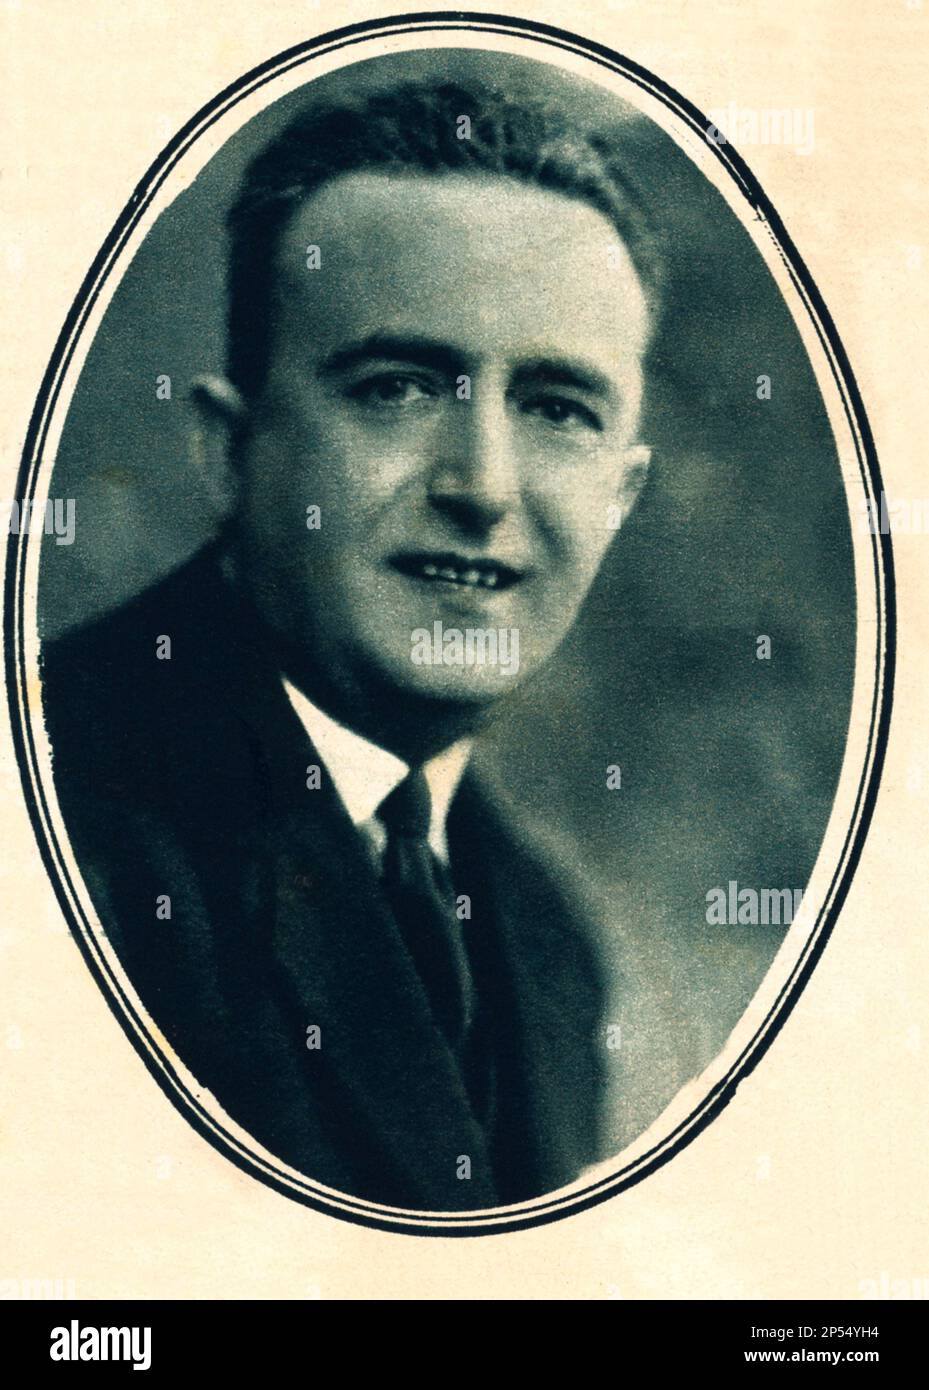 1929 , ITALIA : l'OPERETTA italiana compositore Maestro GIUSEPPE PIETRI ( 1886 – 1946 ) , autore di ACQUA CHETA ( 1920 ) su libretto di Augusto Novelli . - MUSICA leggera - compositore - ritratto - ritratto ---- Archivio GBB Foto Stock